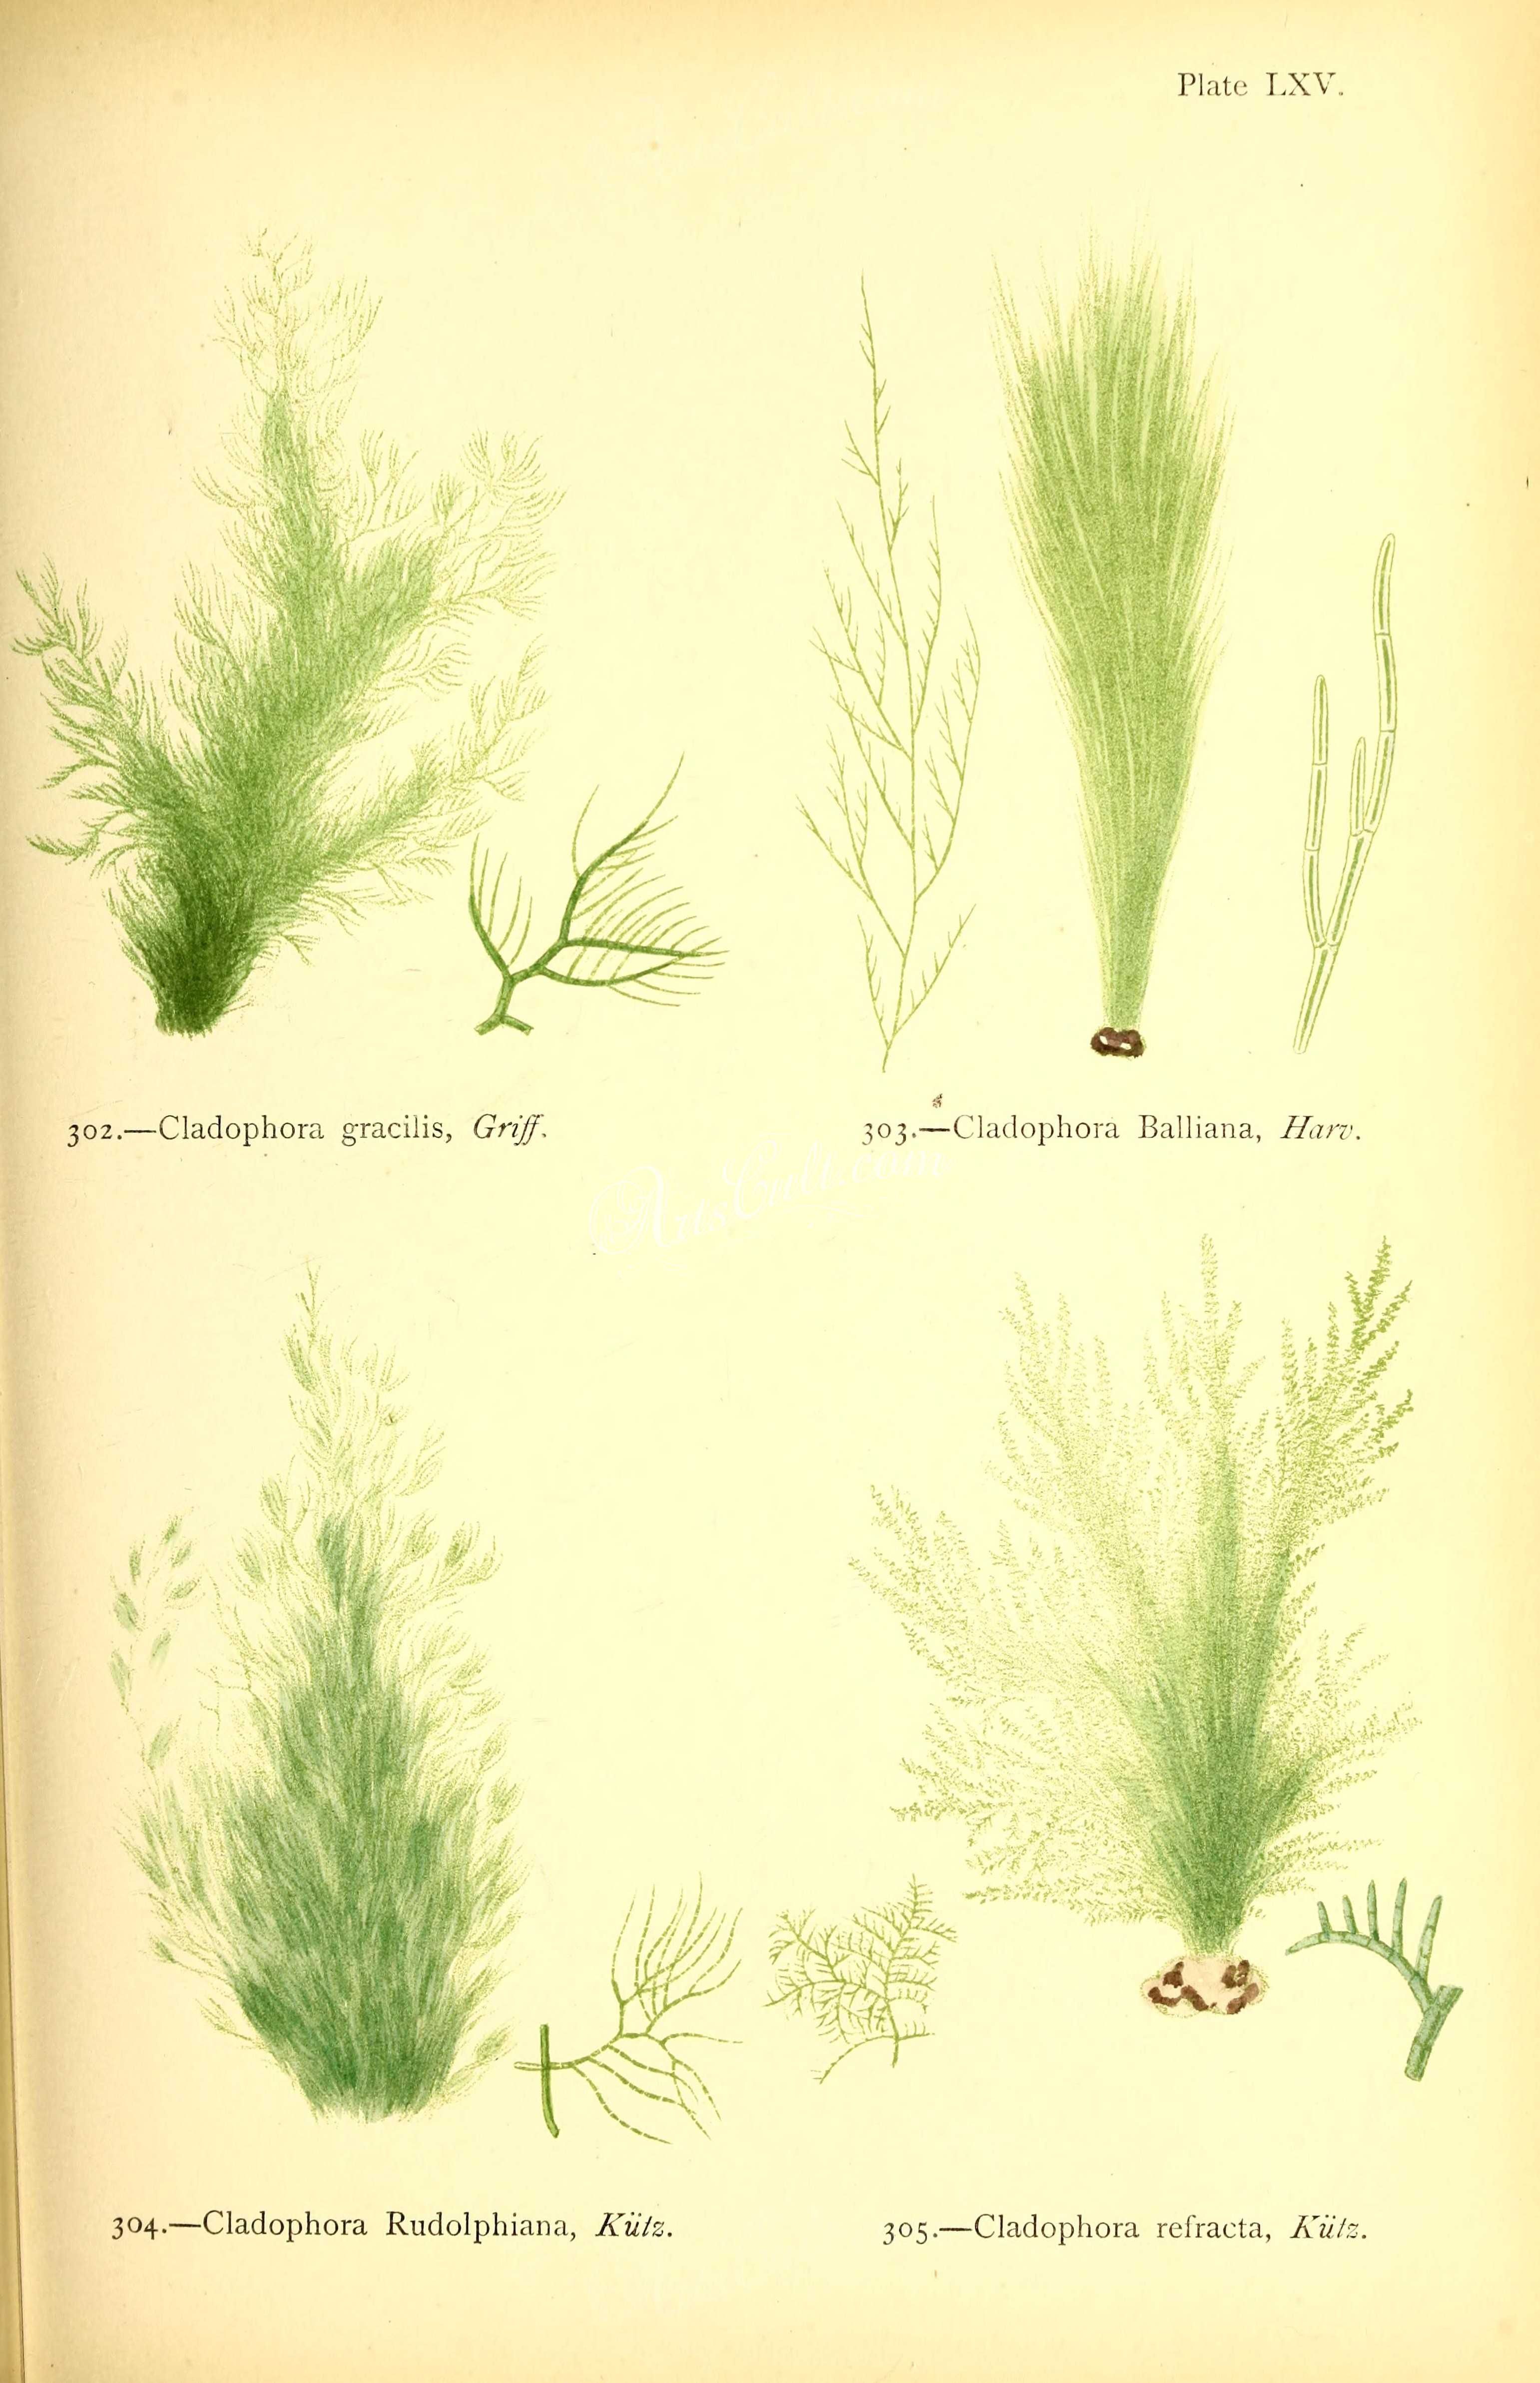 GREEN ALGAE (cladophora rudolphiana)